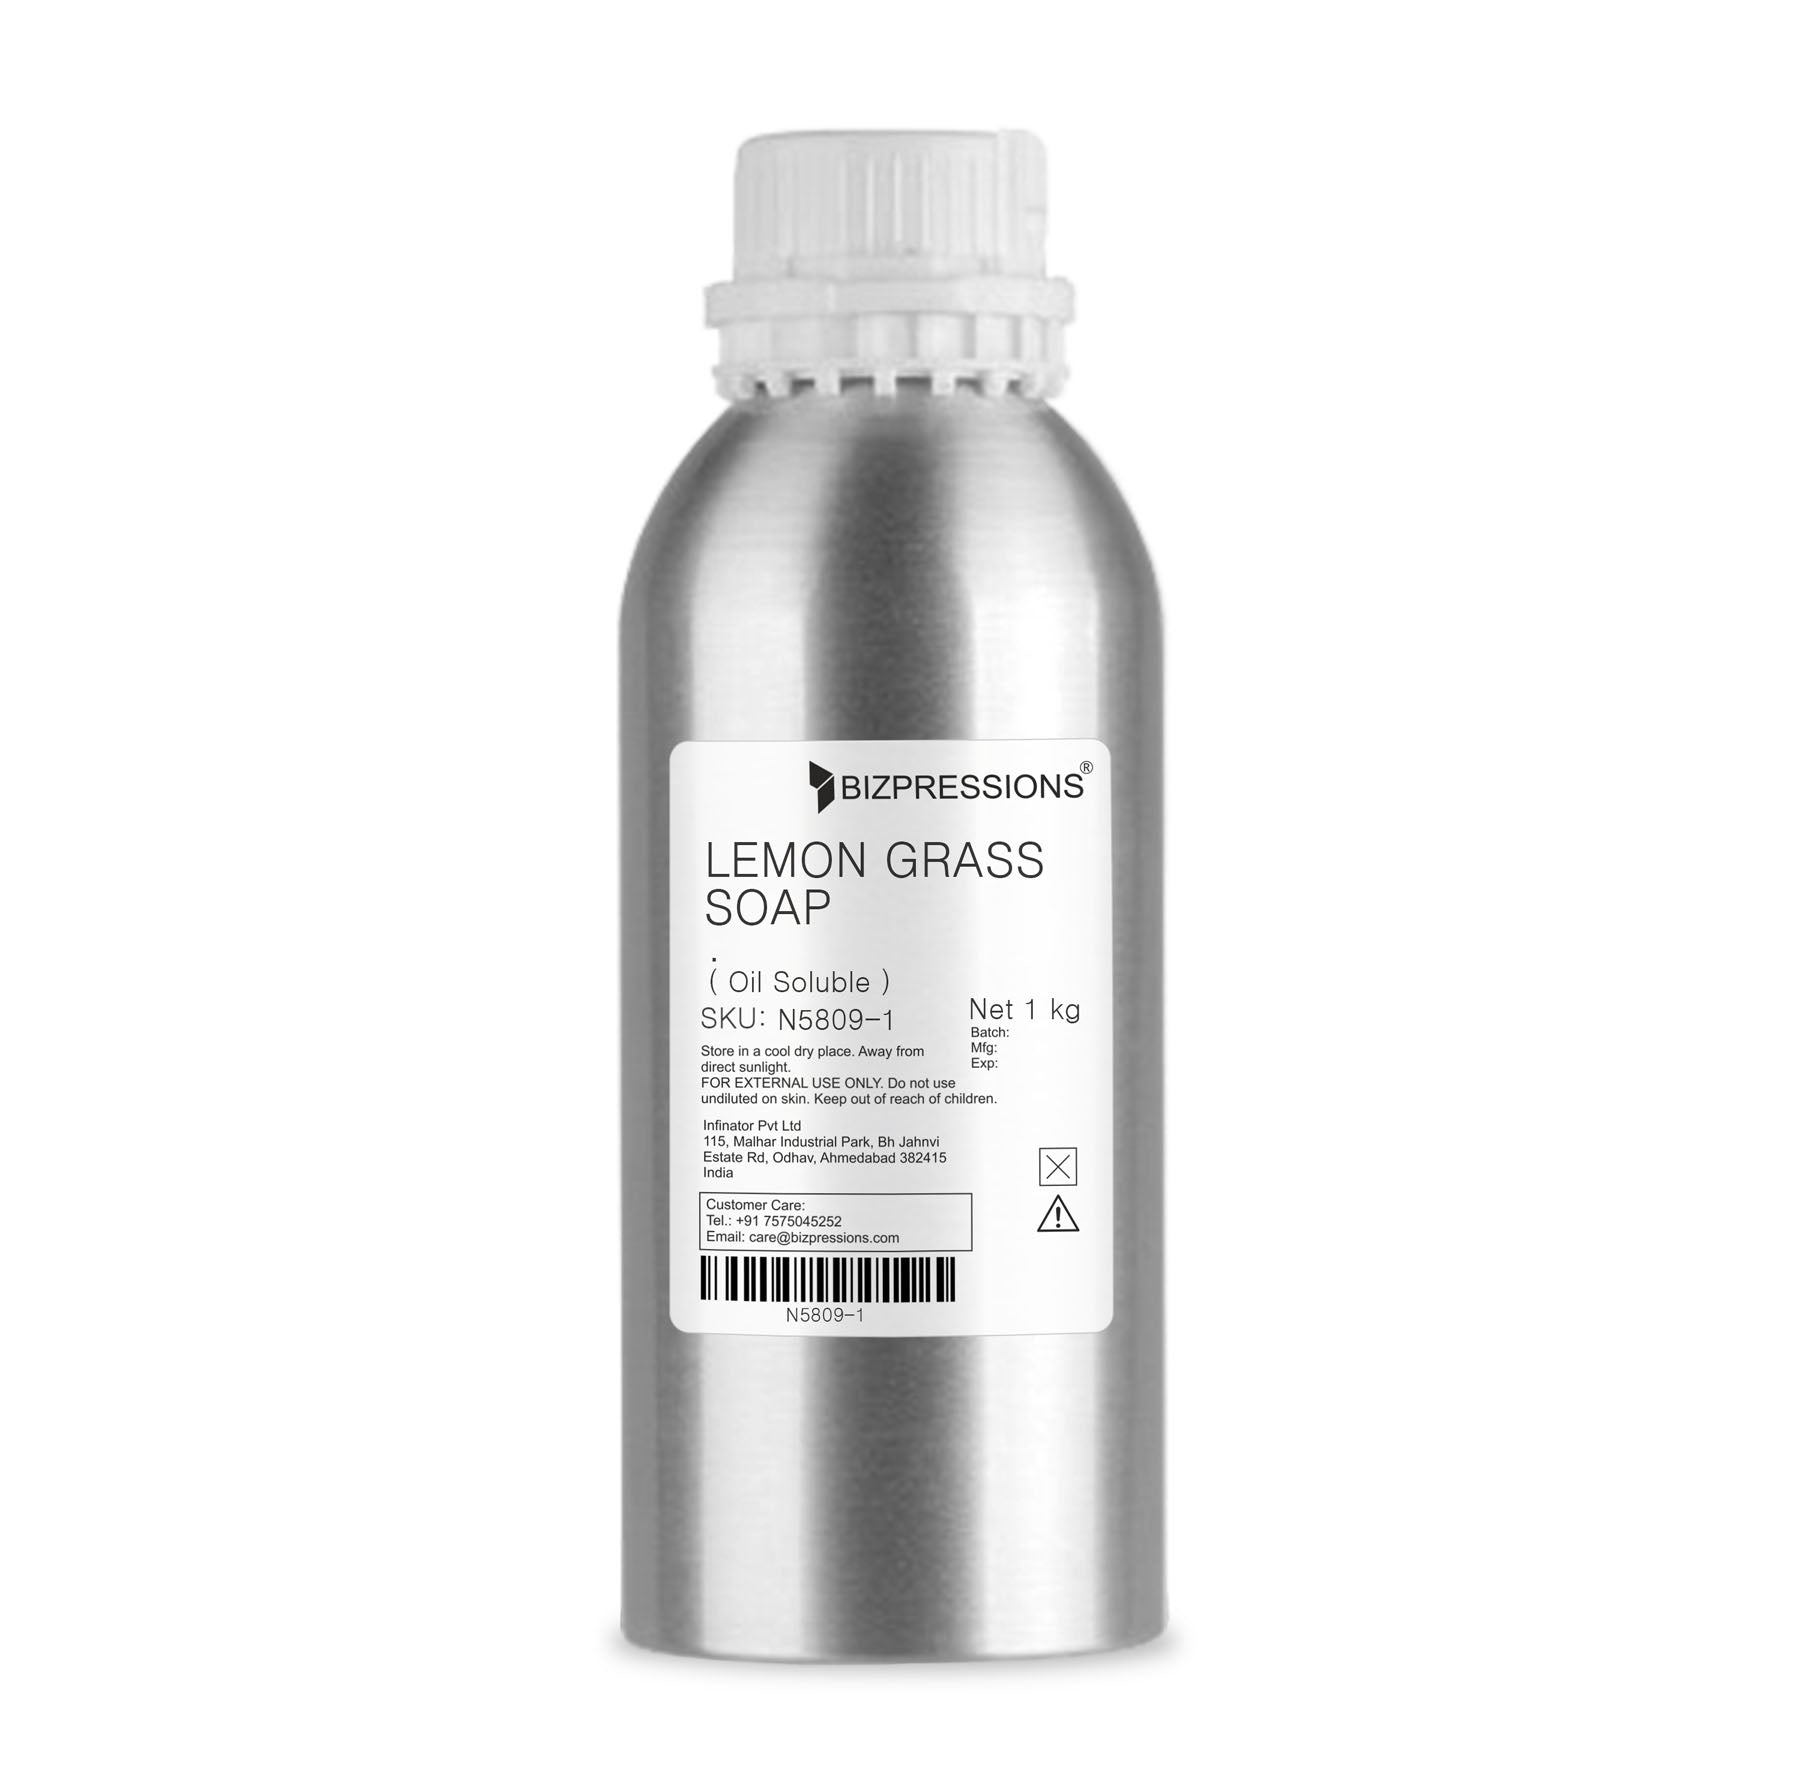 LEMON GRASS SOAP - Fragrance ( Oil Soluble ) - 1 kg